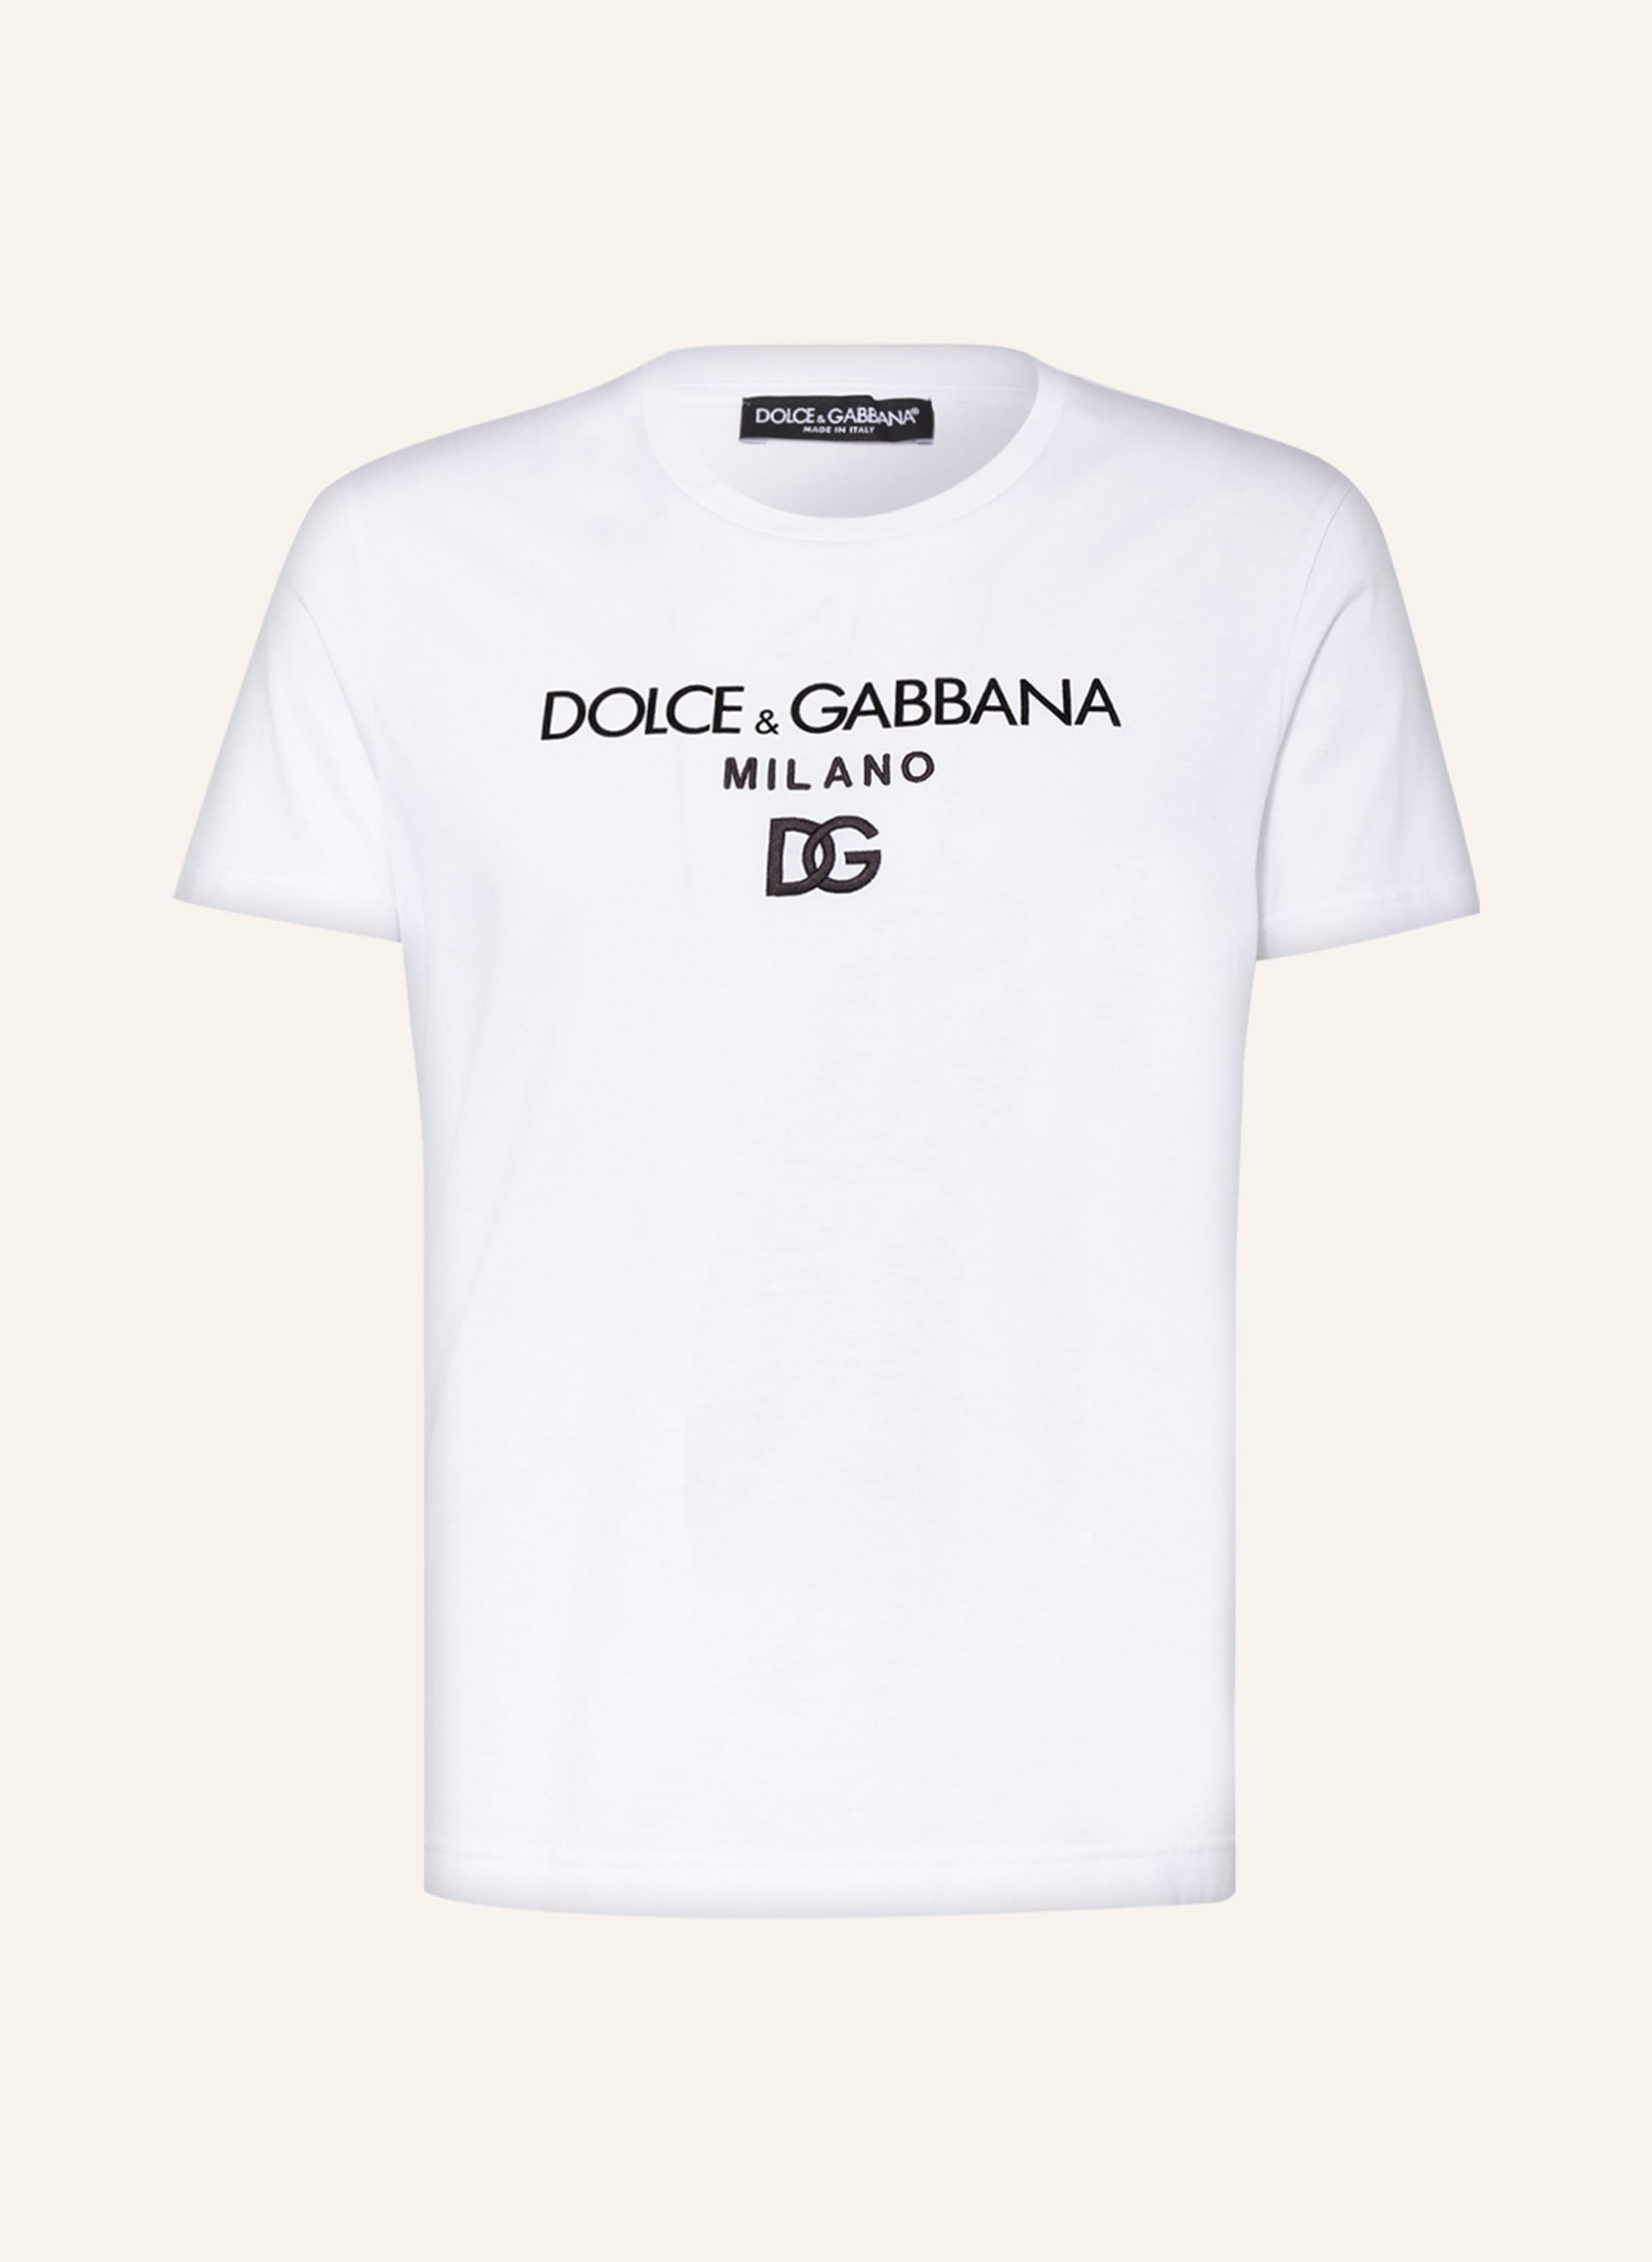 DOLCE & GABBANA T-shirt in white